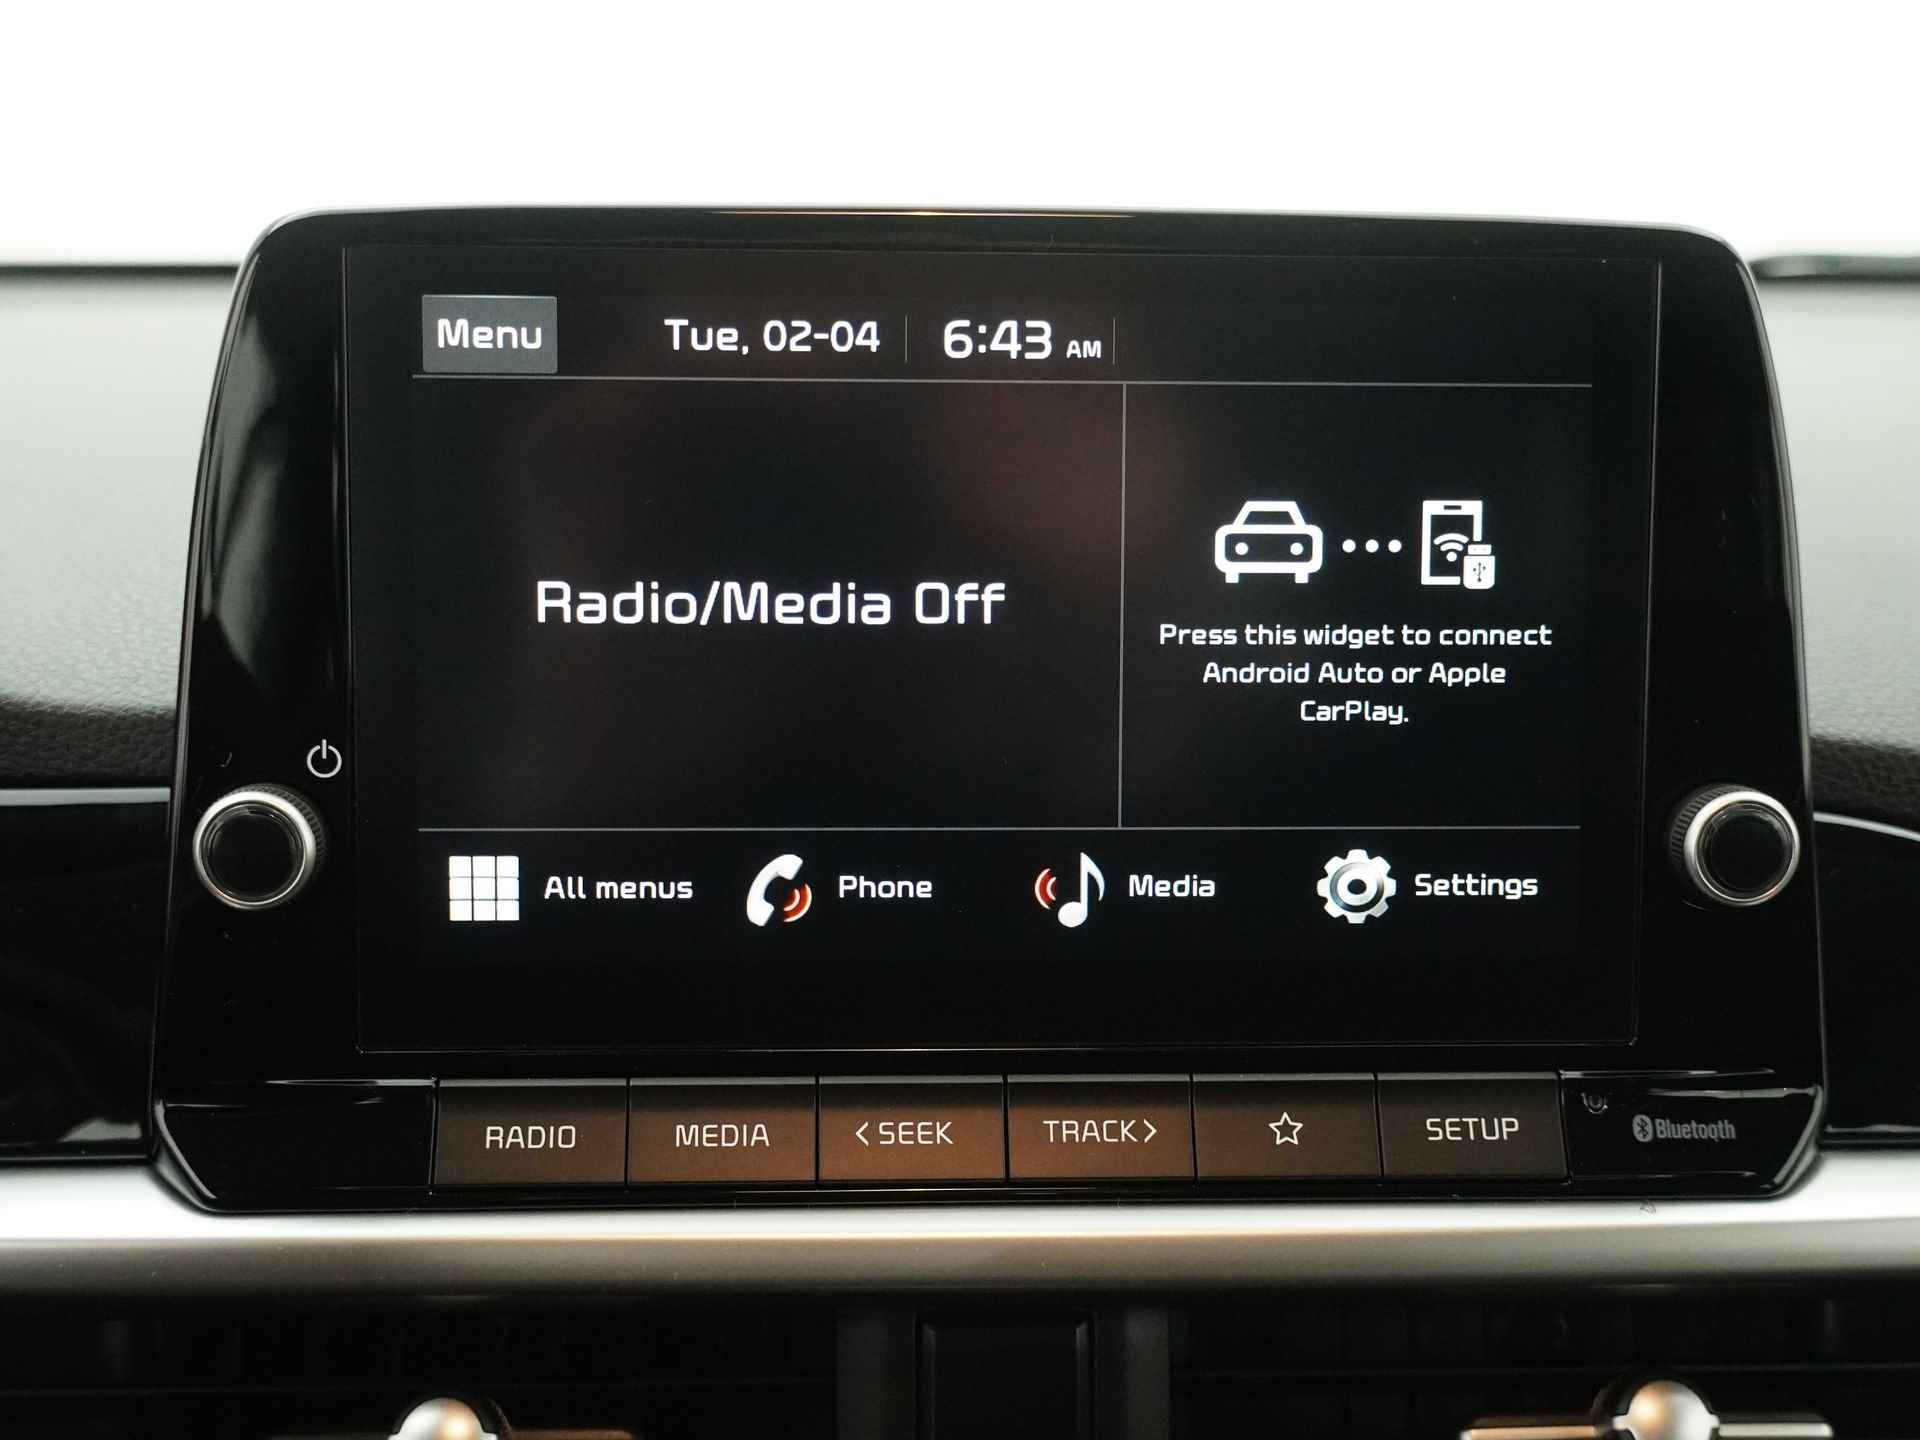 Kia Picanto 1.0 DPi DynamicLine - Cruise Control - Airco - Achteruitrijcamera - Apple CarPlay/Android Auto - Fabrieksgarantie tot 2031 - Meerdere kleuren uit voorraad leverbaar! - 24/40